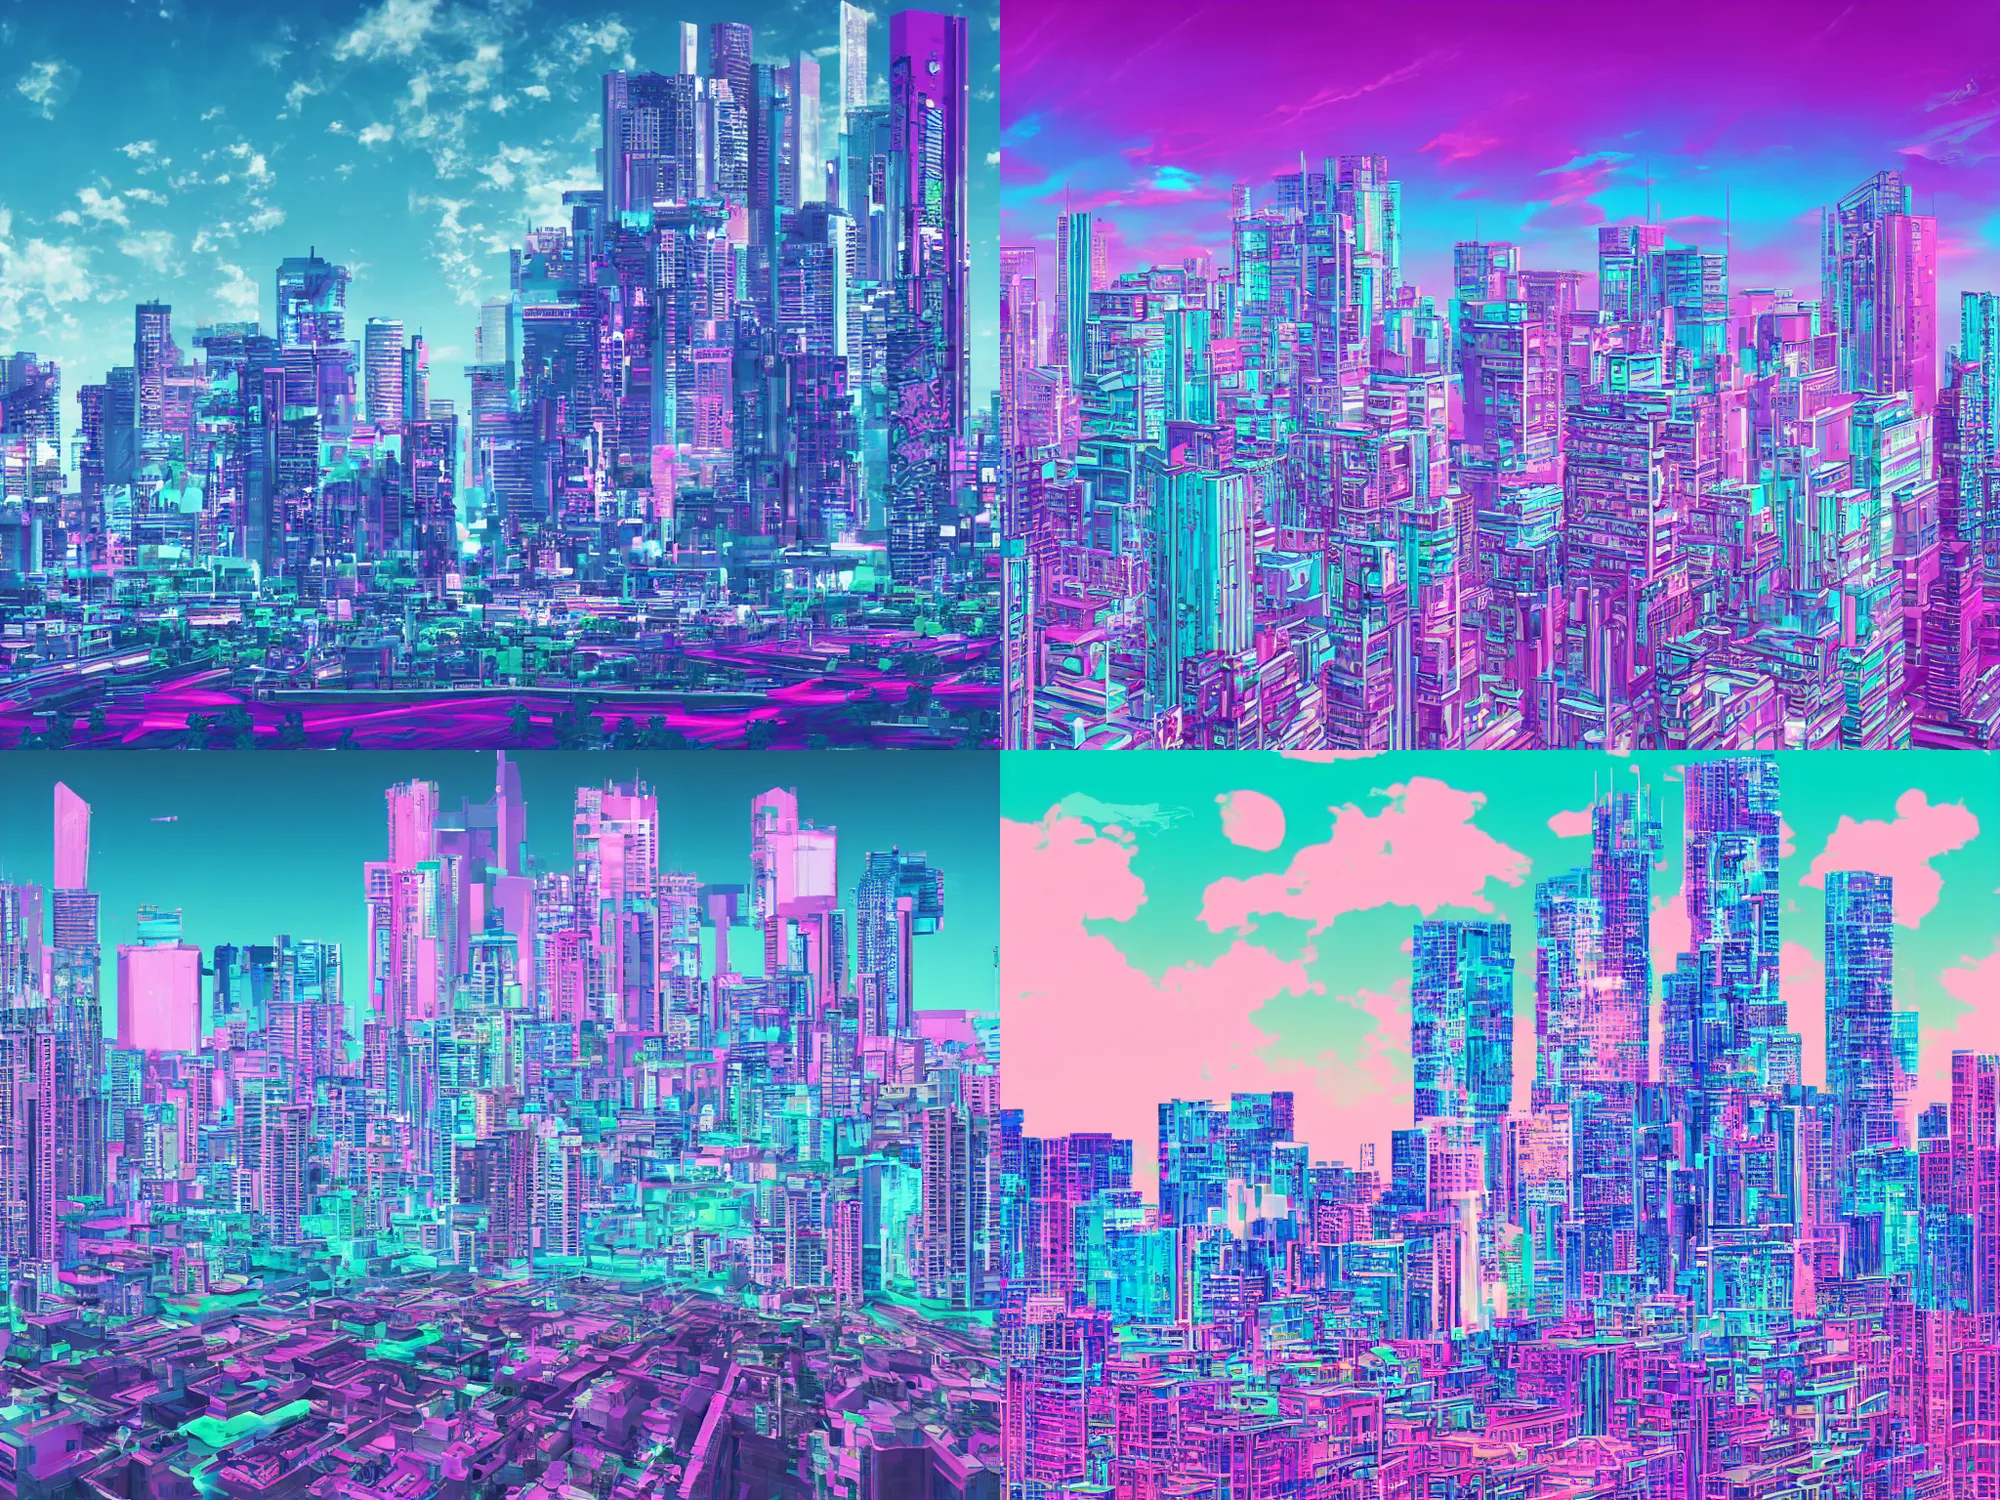 Prompt: A vaporwave cityscape